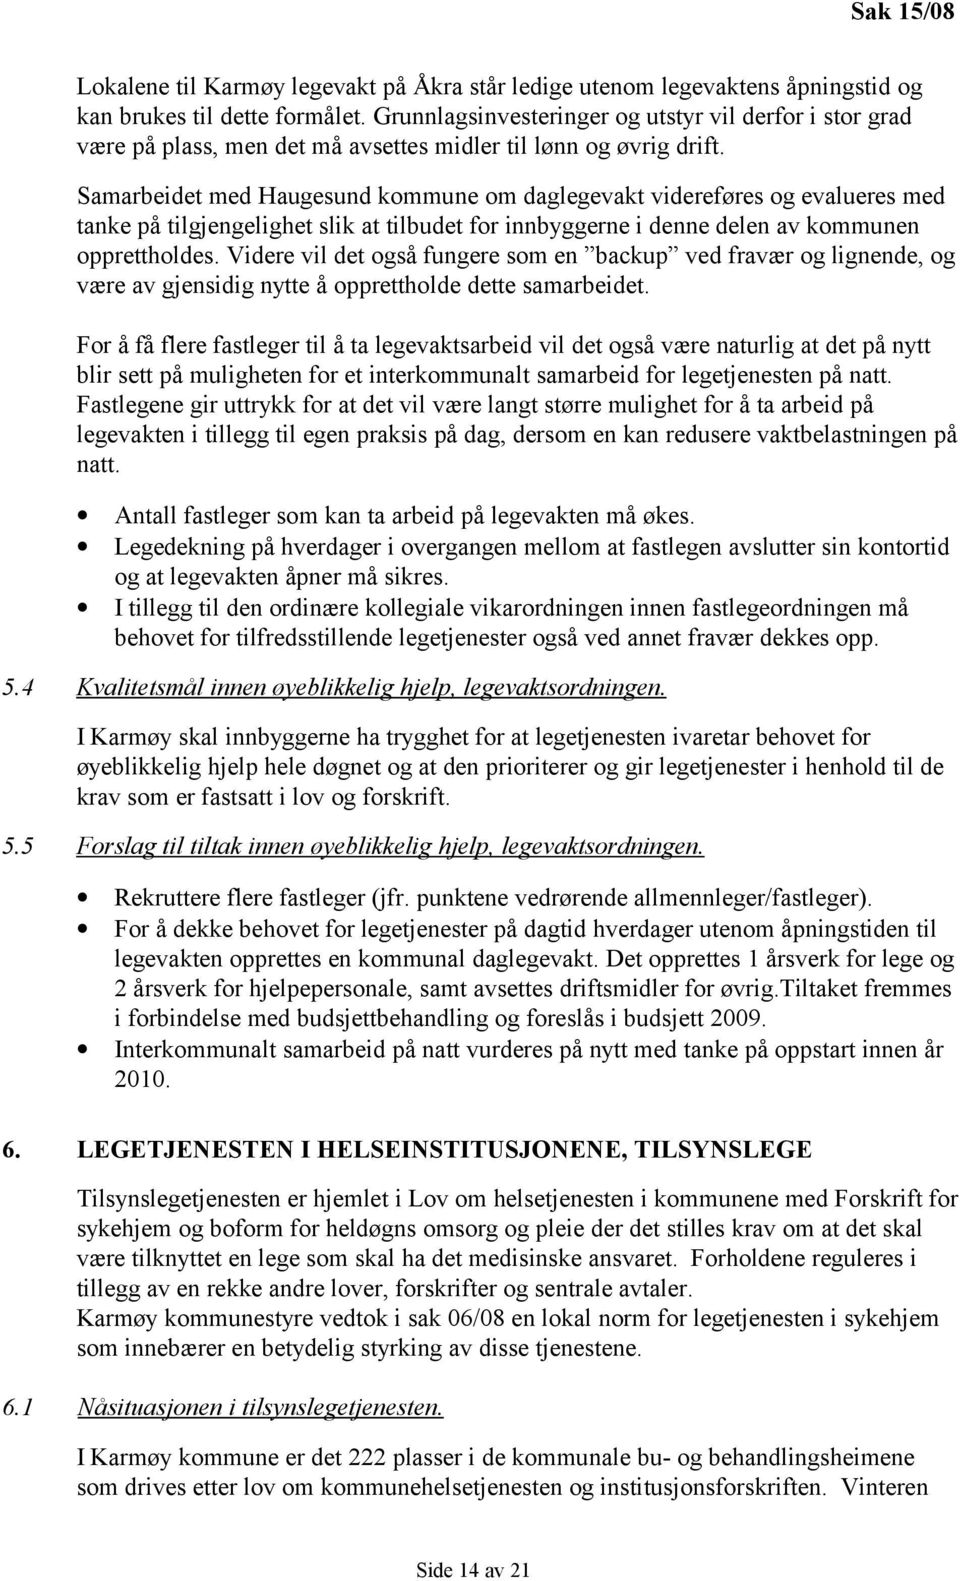 Samarbeidet med Haugesund kommune om daglegevakt videreføres og evalueres med tanke på tilgjengelighet slik at tilbudet for innbyggerne i denne delen av kommunen opprettholdes.